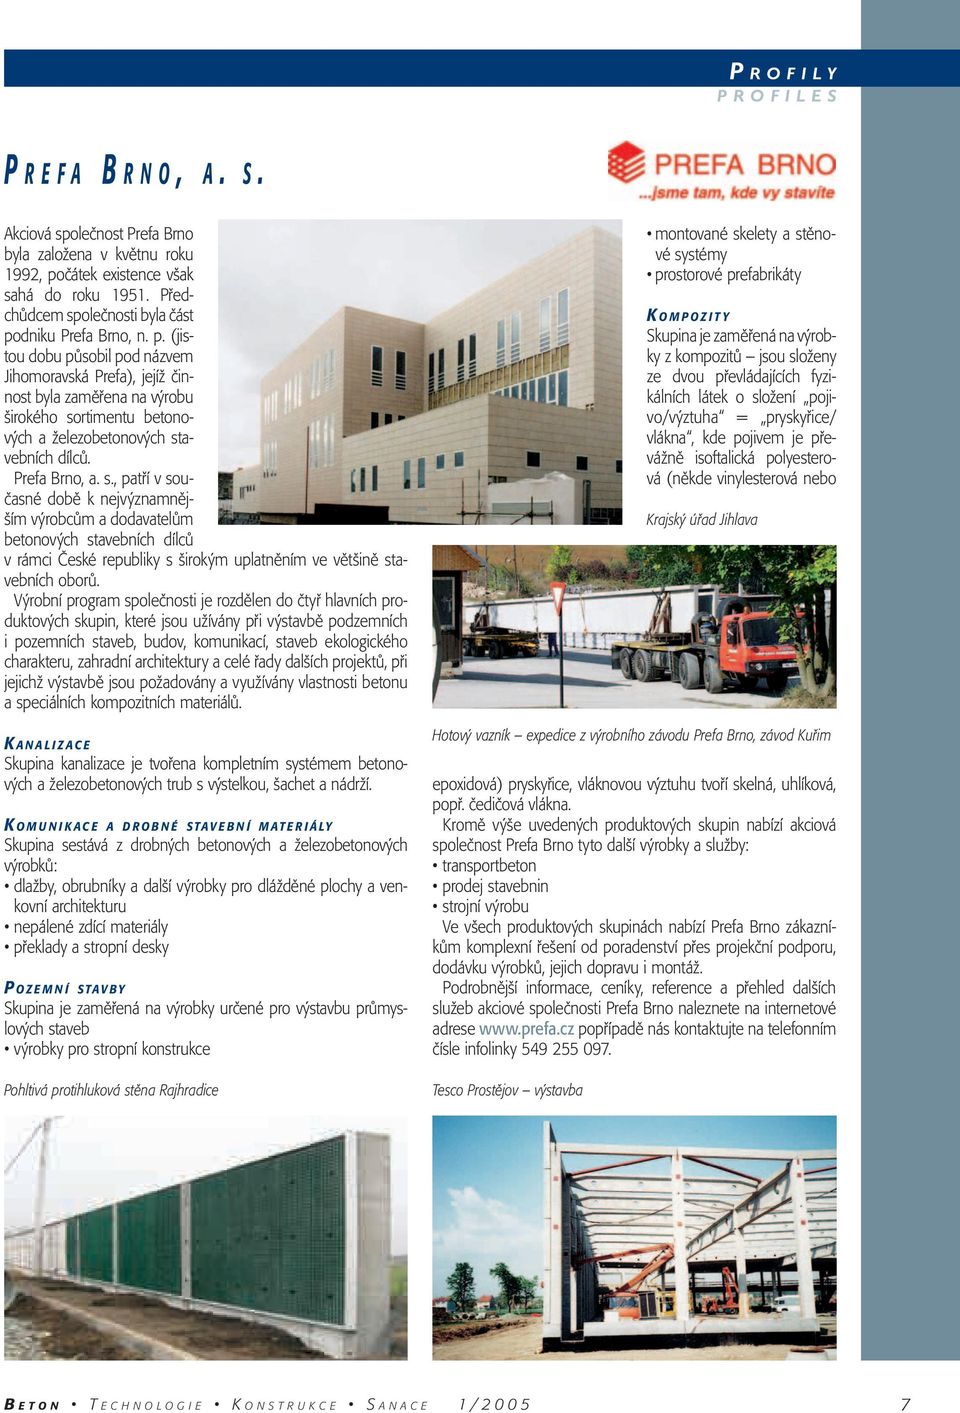 Prefa Brno, a. s., patří v současné době k nejvýznamnějším výrobcům a dodavatelům betonových stavebních dílců v rámci České republiky s širokým uplatněním ve většině stavebních oborů.